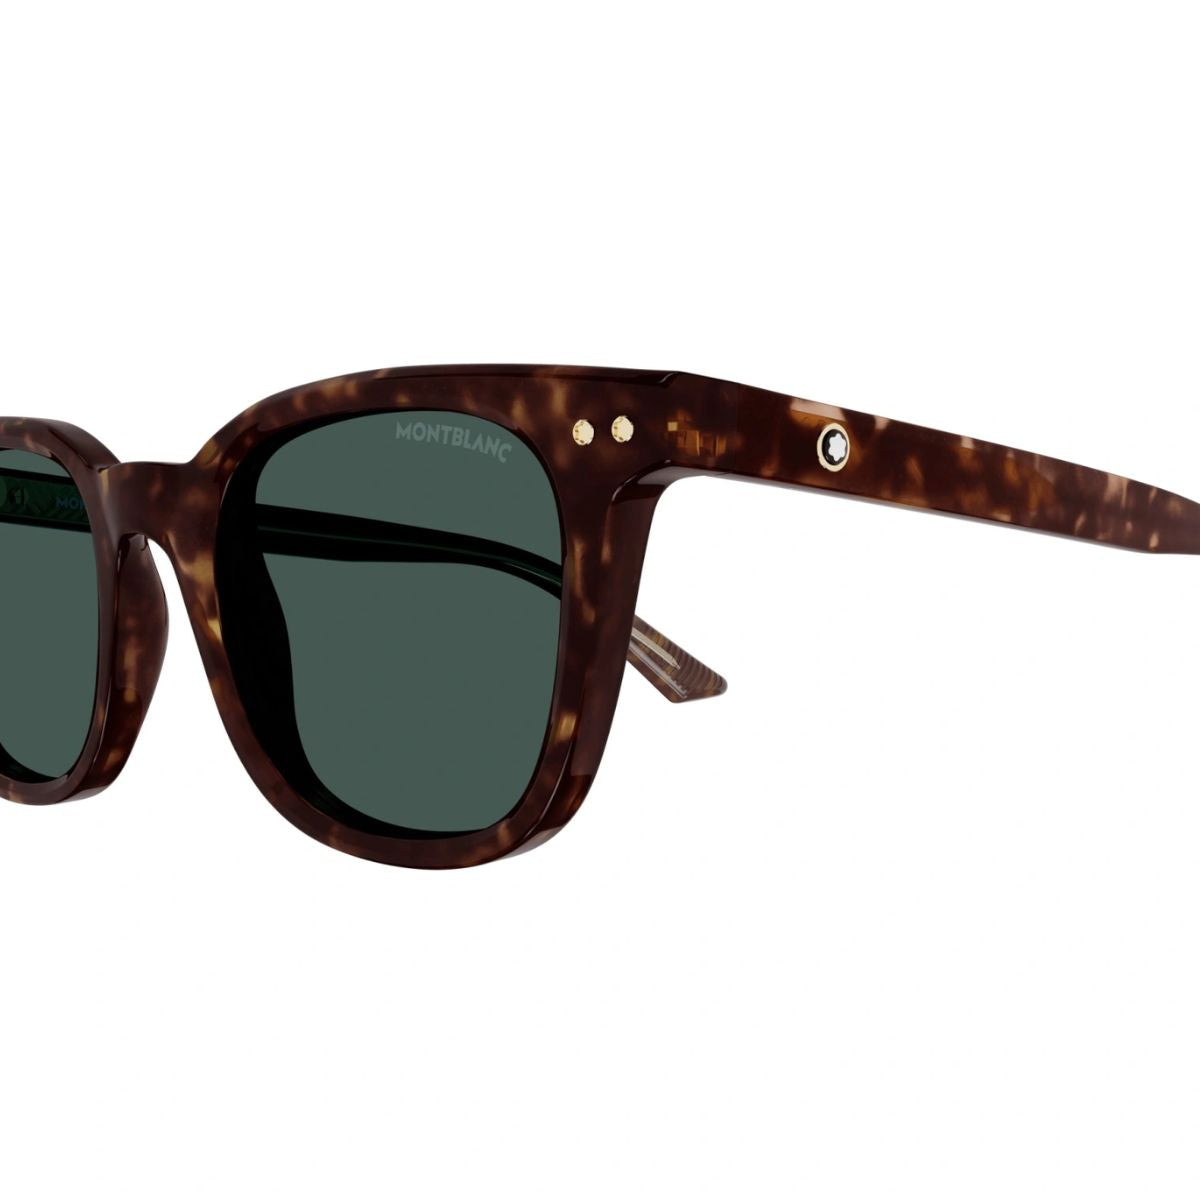 "Buy Trending Mont Blanc Square Sunglasses For Mens"